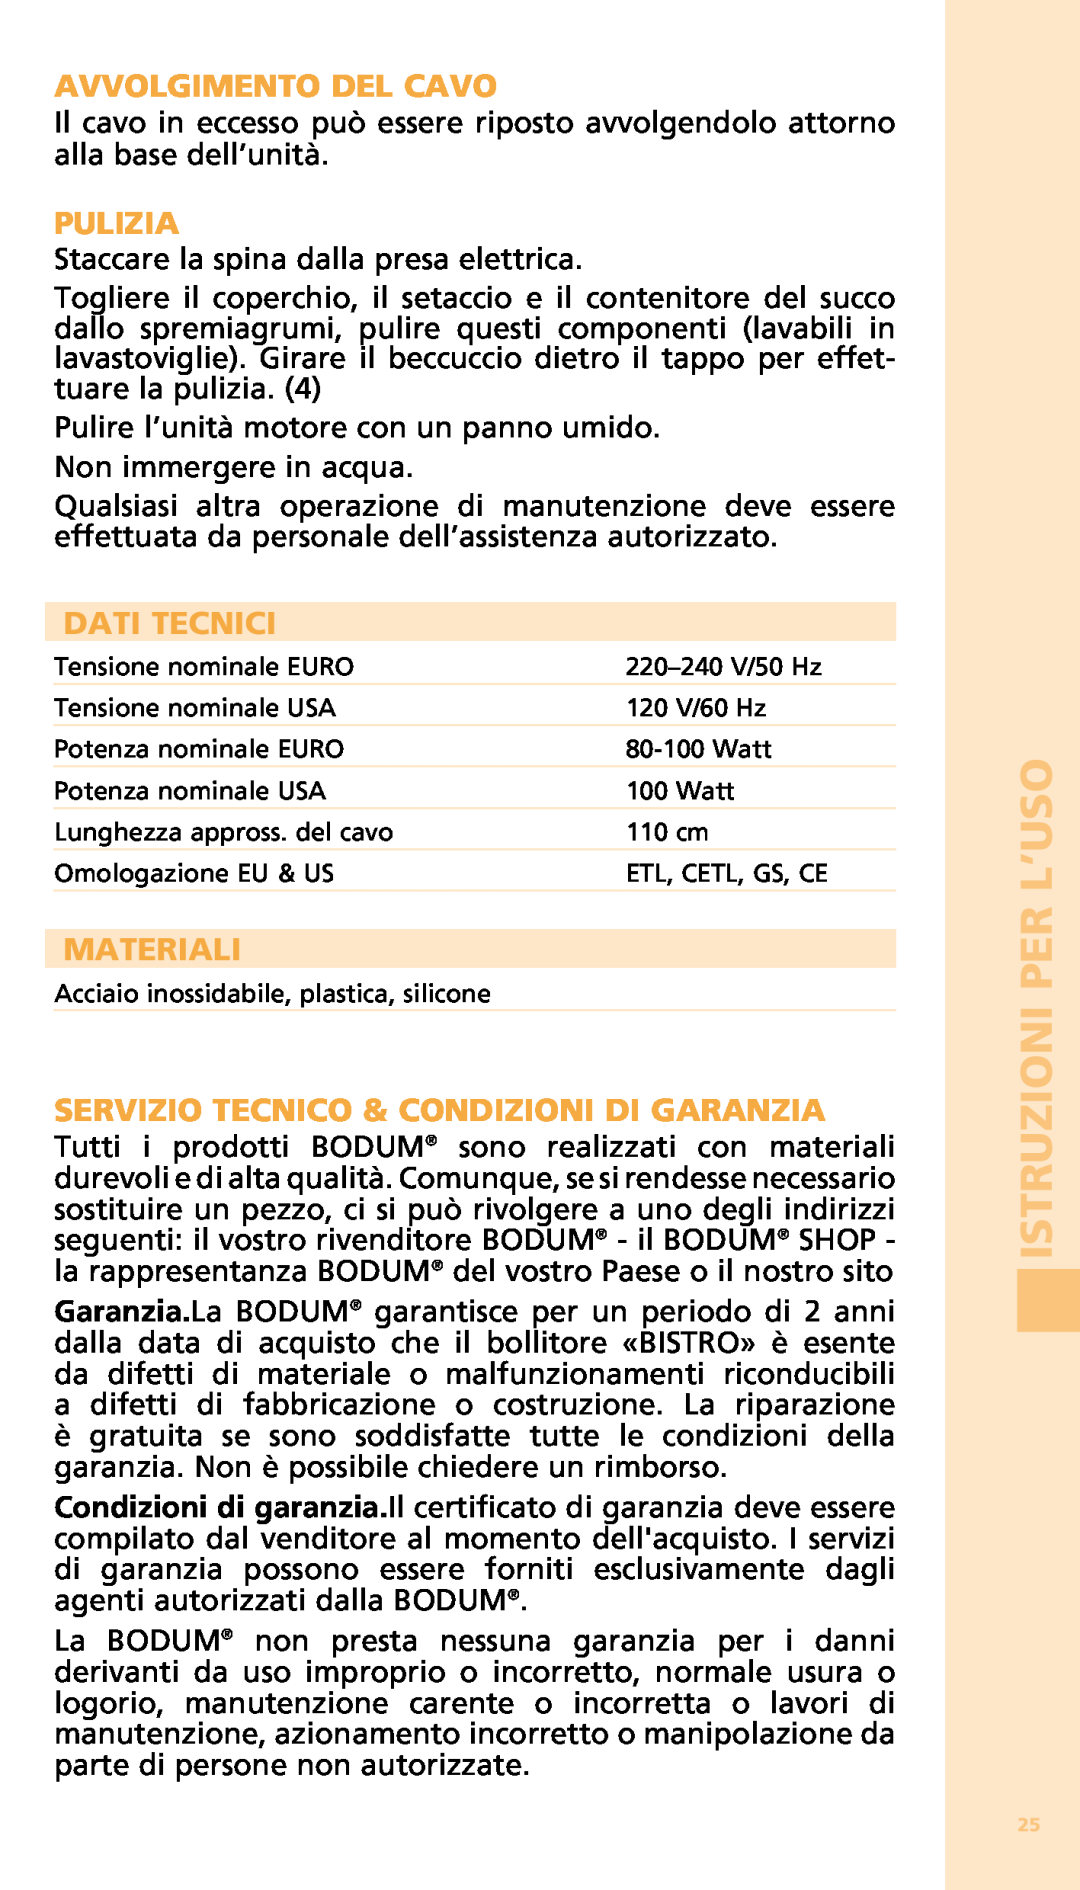 Bodum 11149 warranty Avvolgimento Del Cavo, Pulizia, Dati Tecnici, Materiali, Servizio Tecnico & Condizioni Di Garanzia 